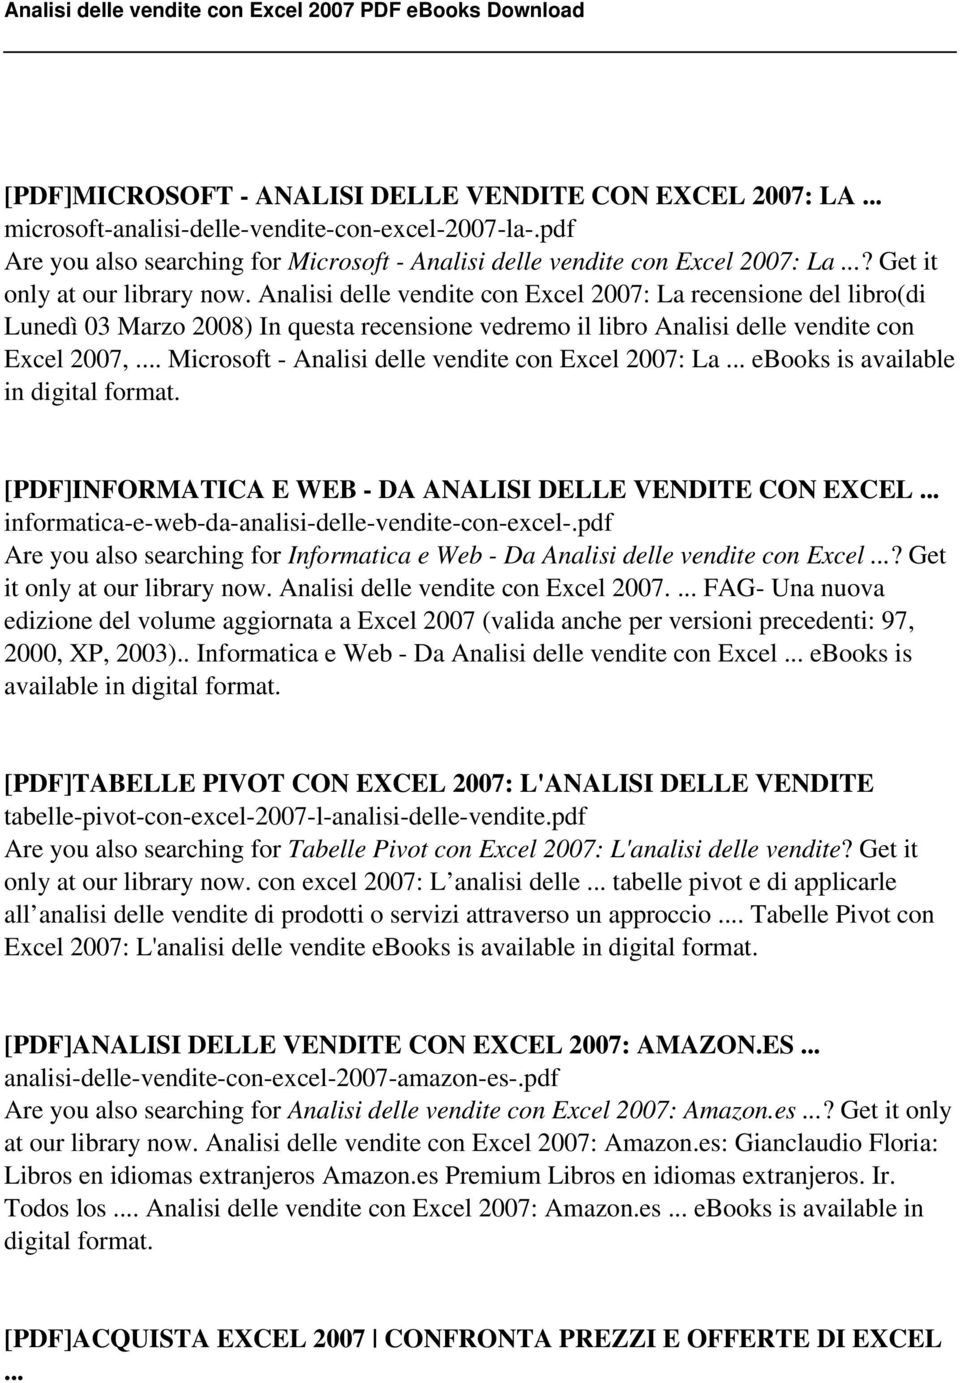 Microsoft - Analisi delle vendite con Excel 2007: La ebooks is available in digital format.